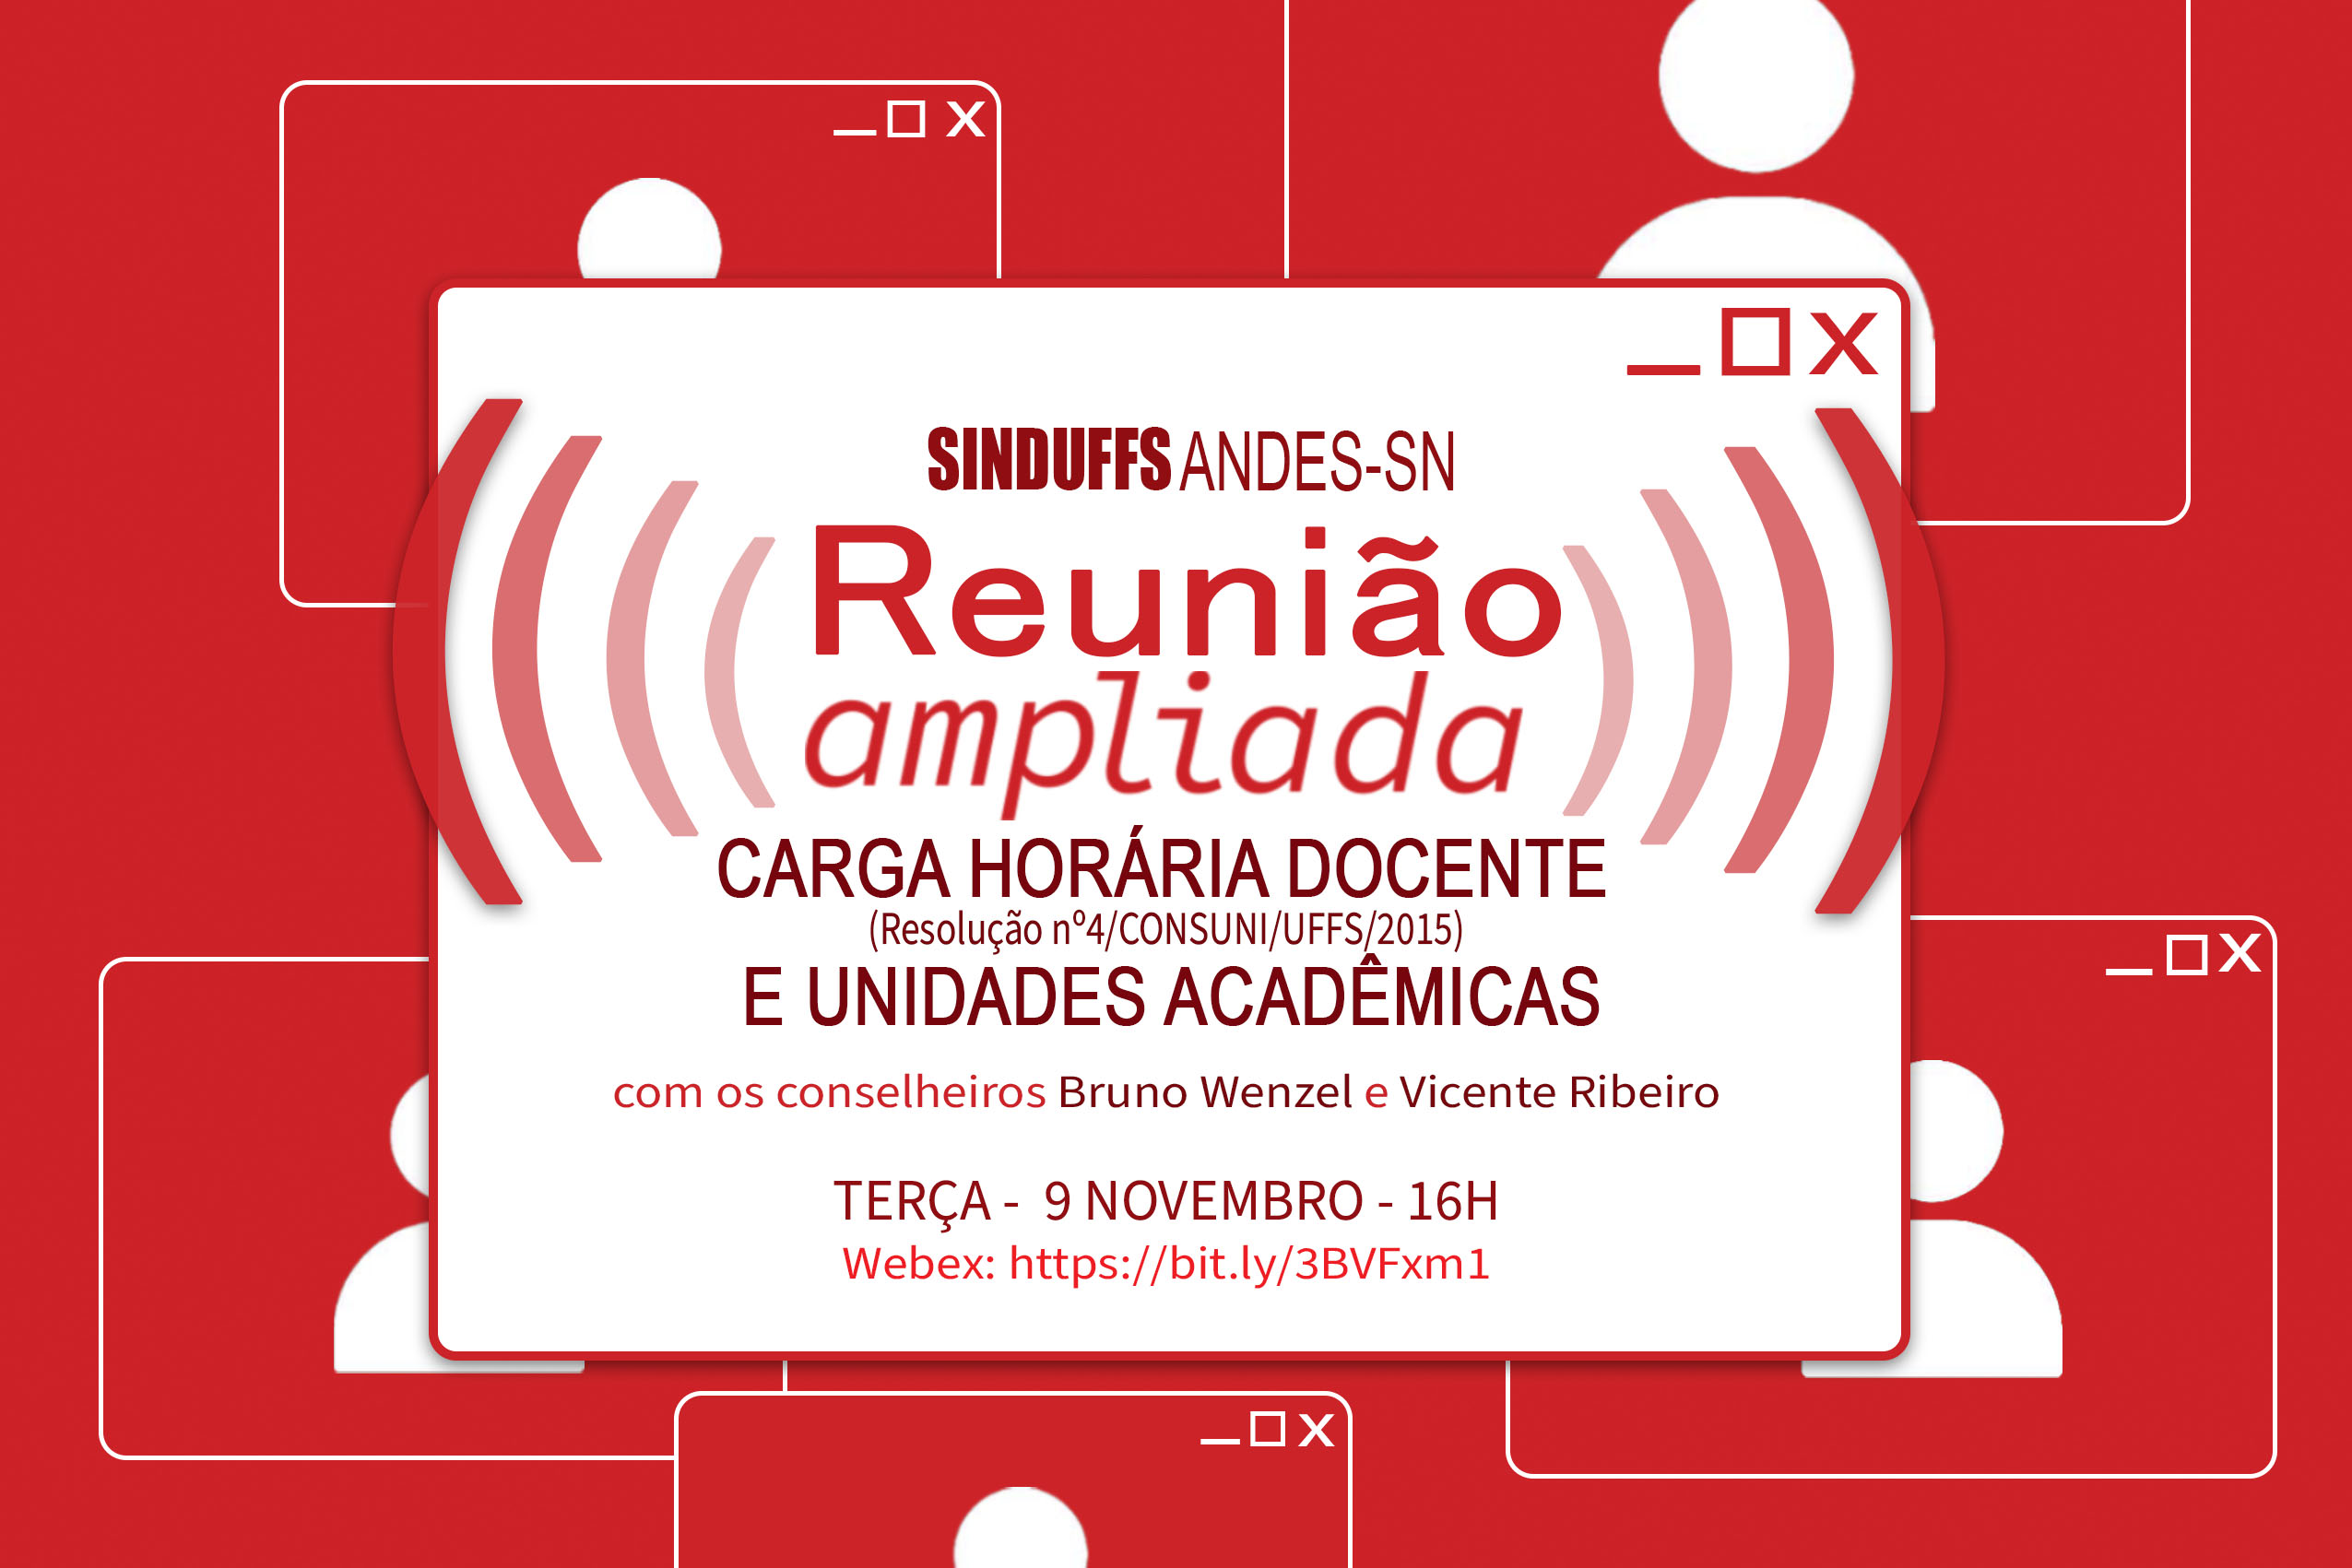 Reunião Ampliada SINDUFFS sobre Carga Horária Docente e Unidades Acadêmicas será na terça (9/11)